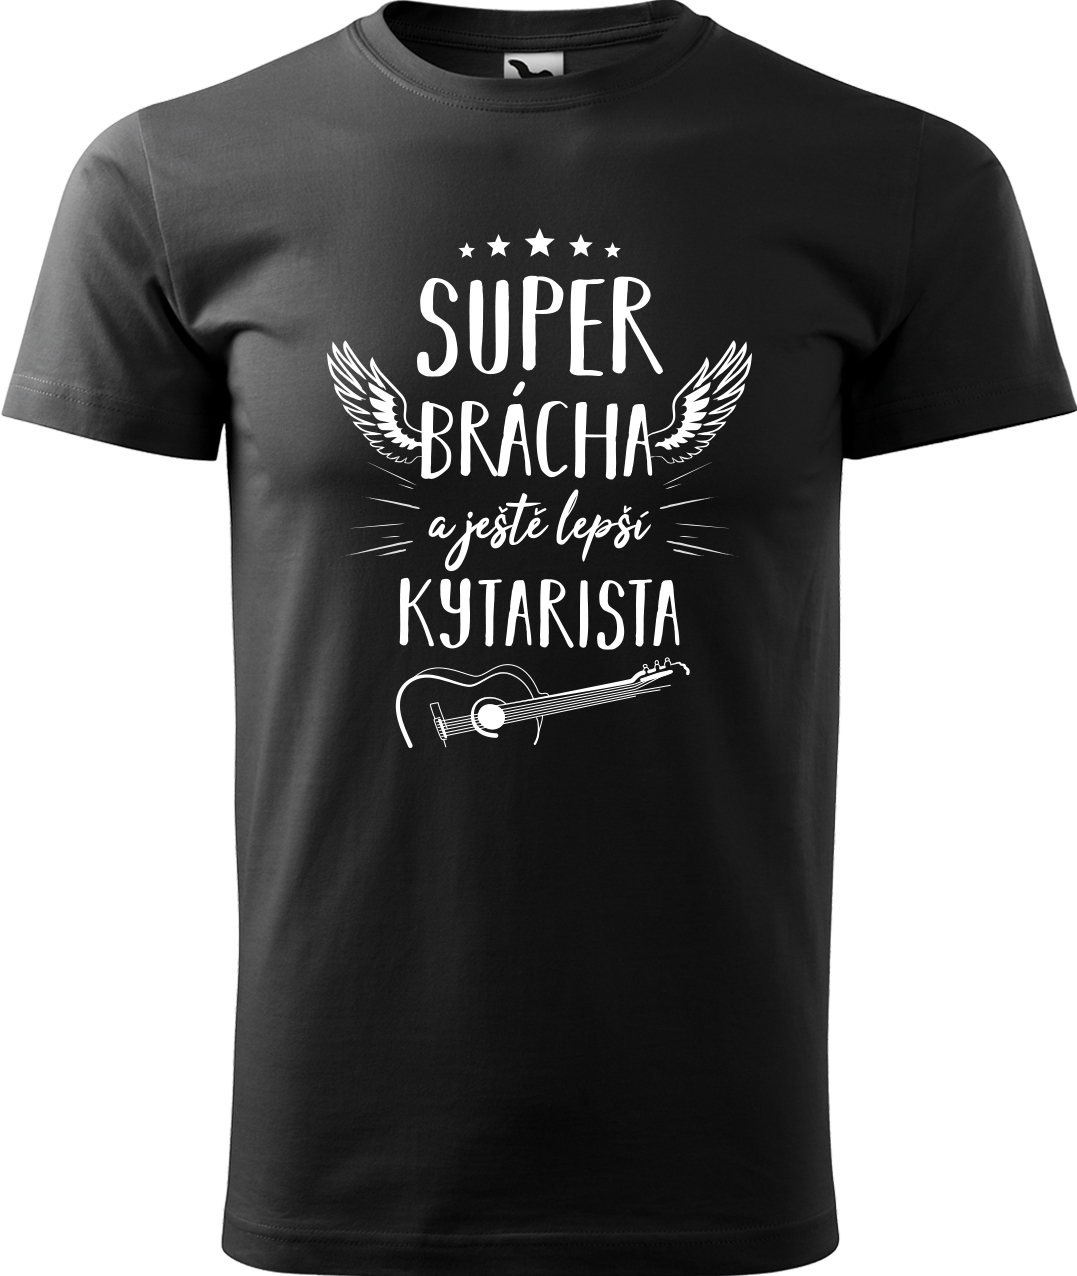 Pánské tričko s kytarou - Super brácha a ještě lepší kytarista Velikost: XL, Barva: Černá (01), Střih: pánský